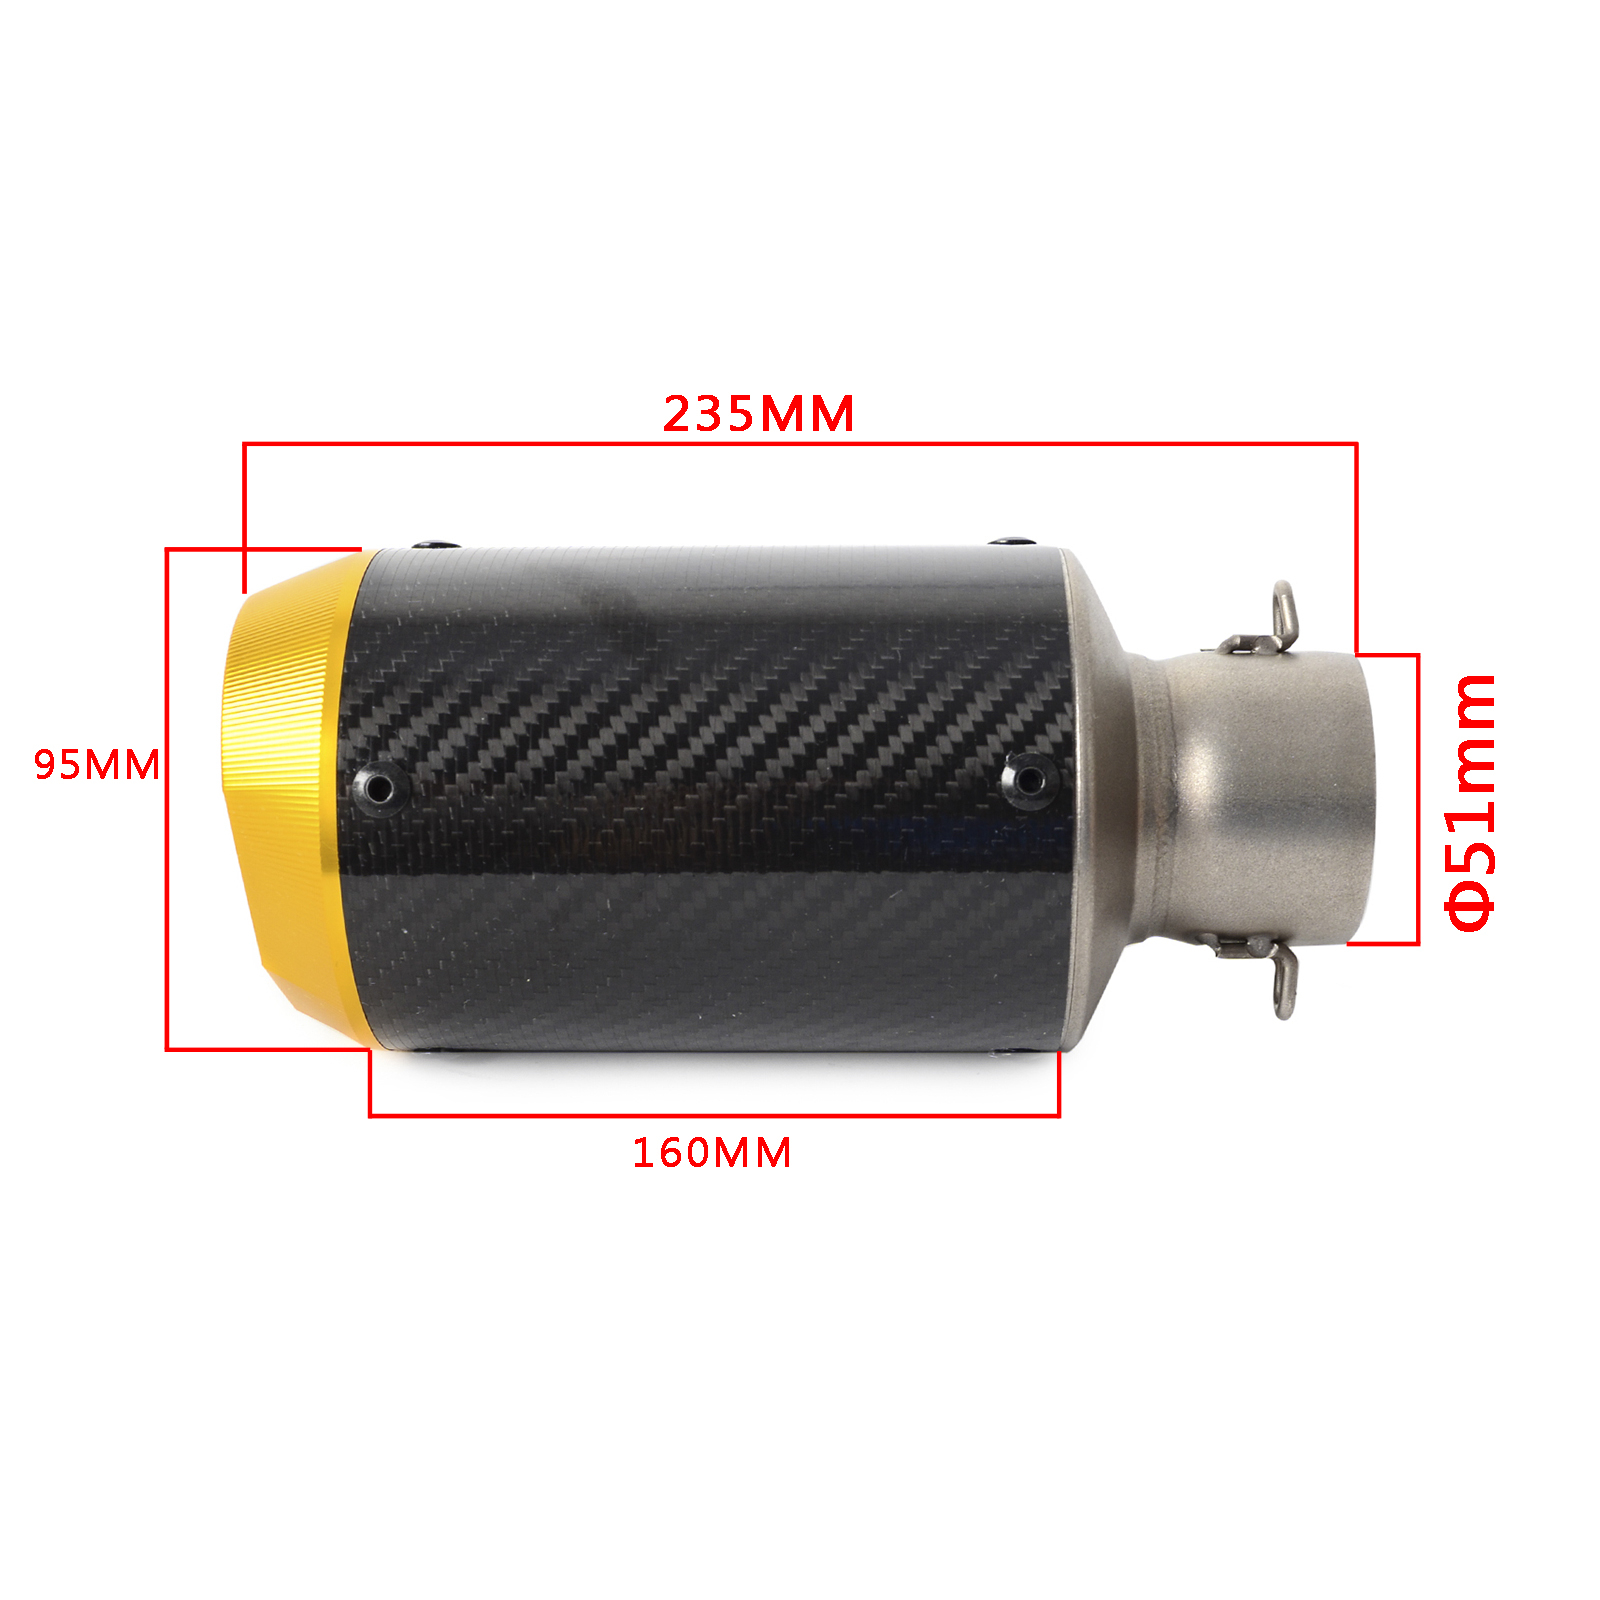 51mm Slip-On Exhaust Muffler Pipe For 125-1200cc Street ...